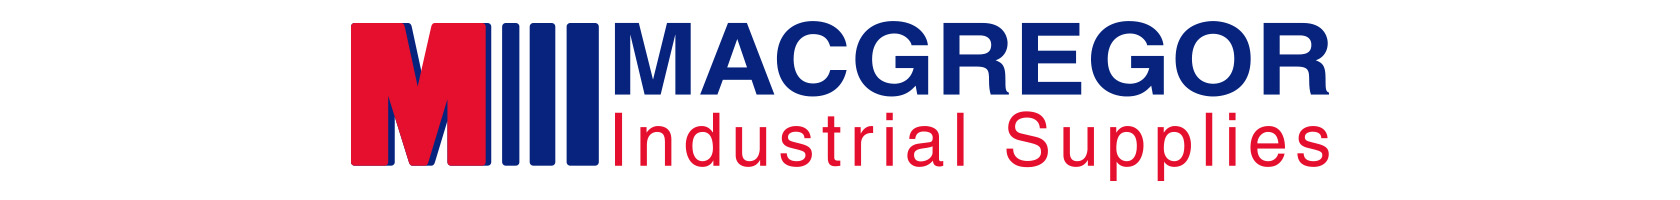 Macgregor Industrial Supplies Ltd Logo